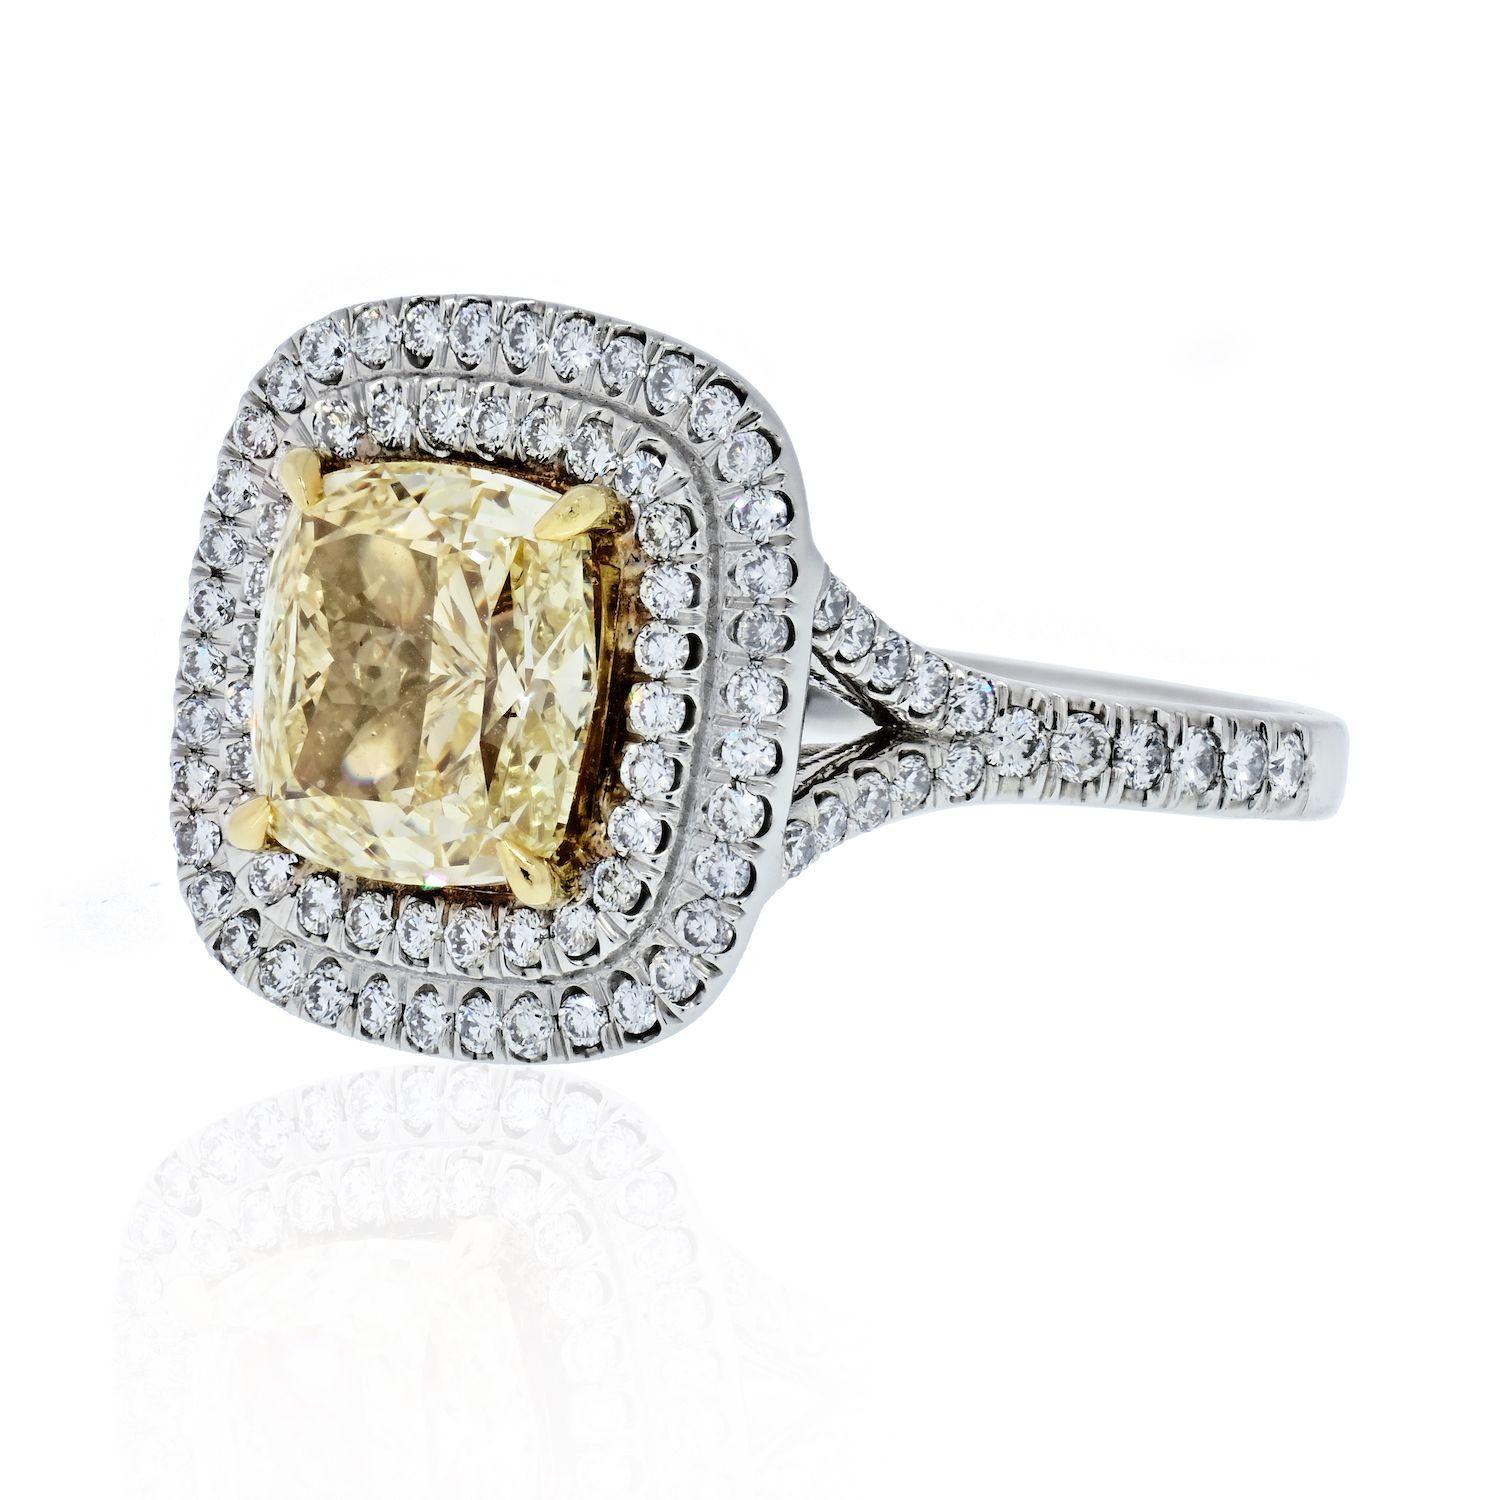 Nur wenige Dinge sind so bezaubernd und verträumt wie ein gelber Diamant im Kissenschliff. Ein gelber Diamant im Kissenschliff, umgeben von einem wunderschönen doppelten Halo aus kleinen farblosen runden Diamanten, ist eines davon.
Dieser